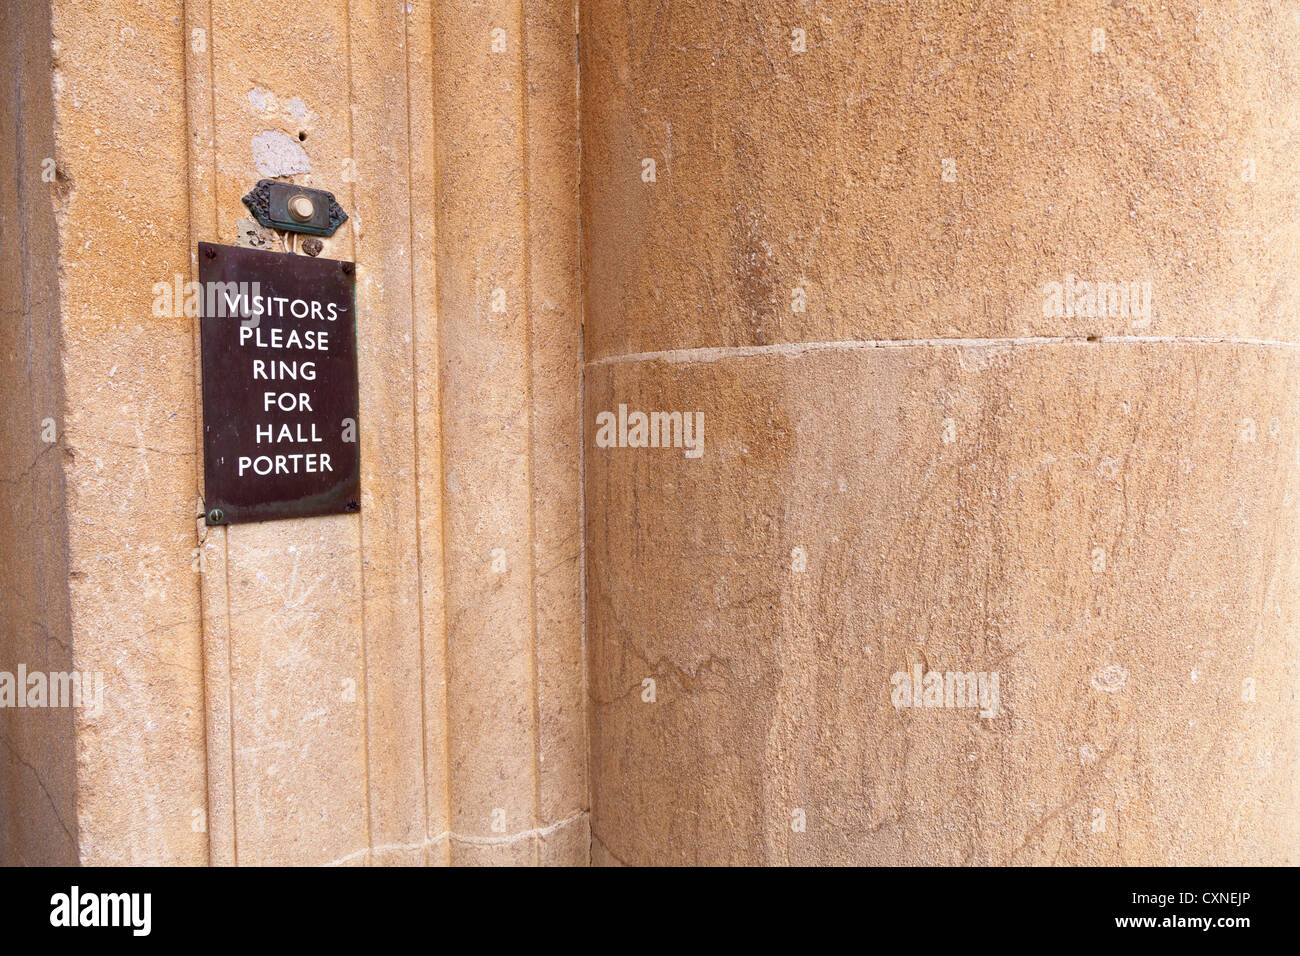 "Visiteurs veuillez anneau pour porter hall' par bouton de sonnette de la porte Banque D'Images